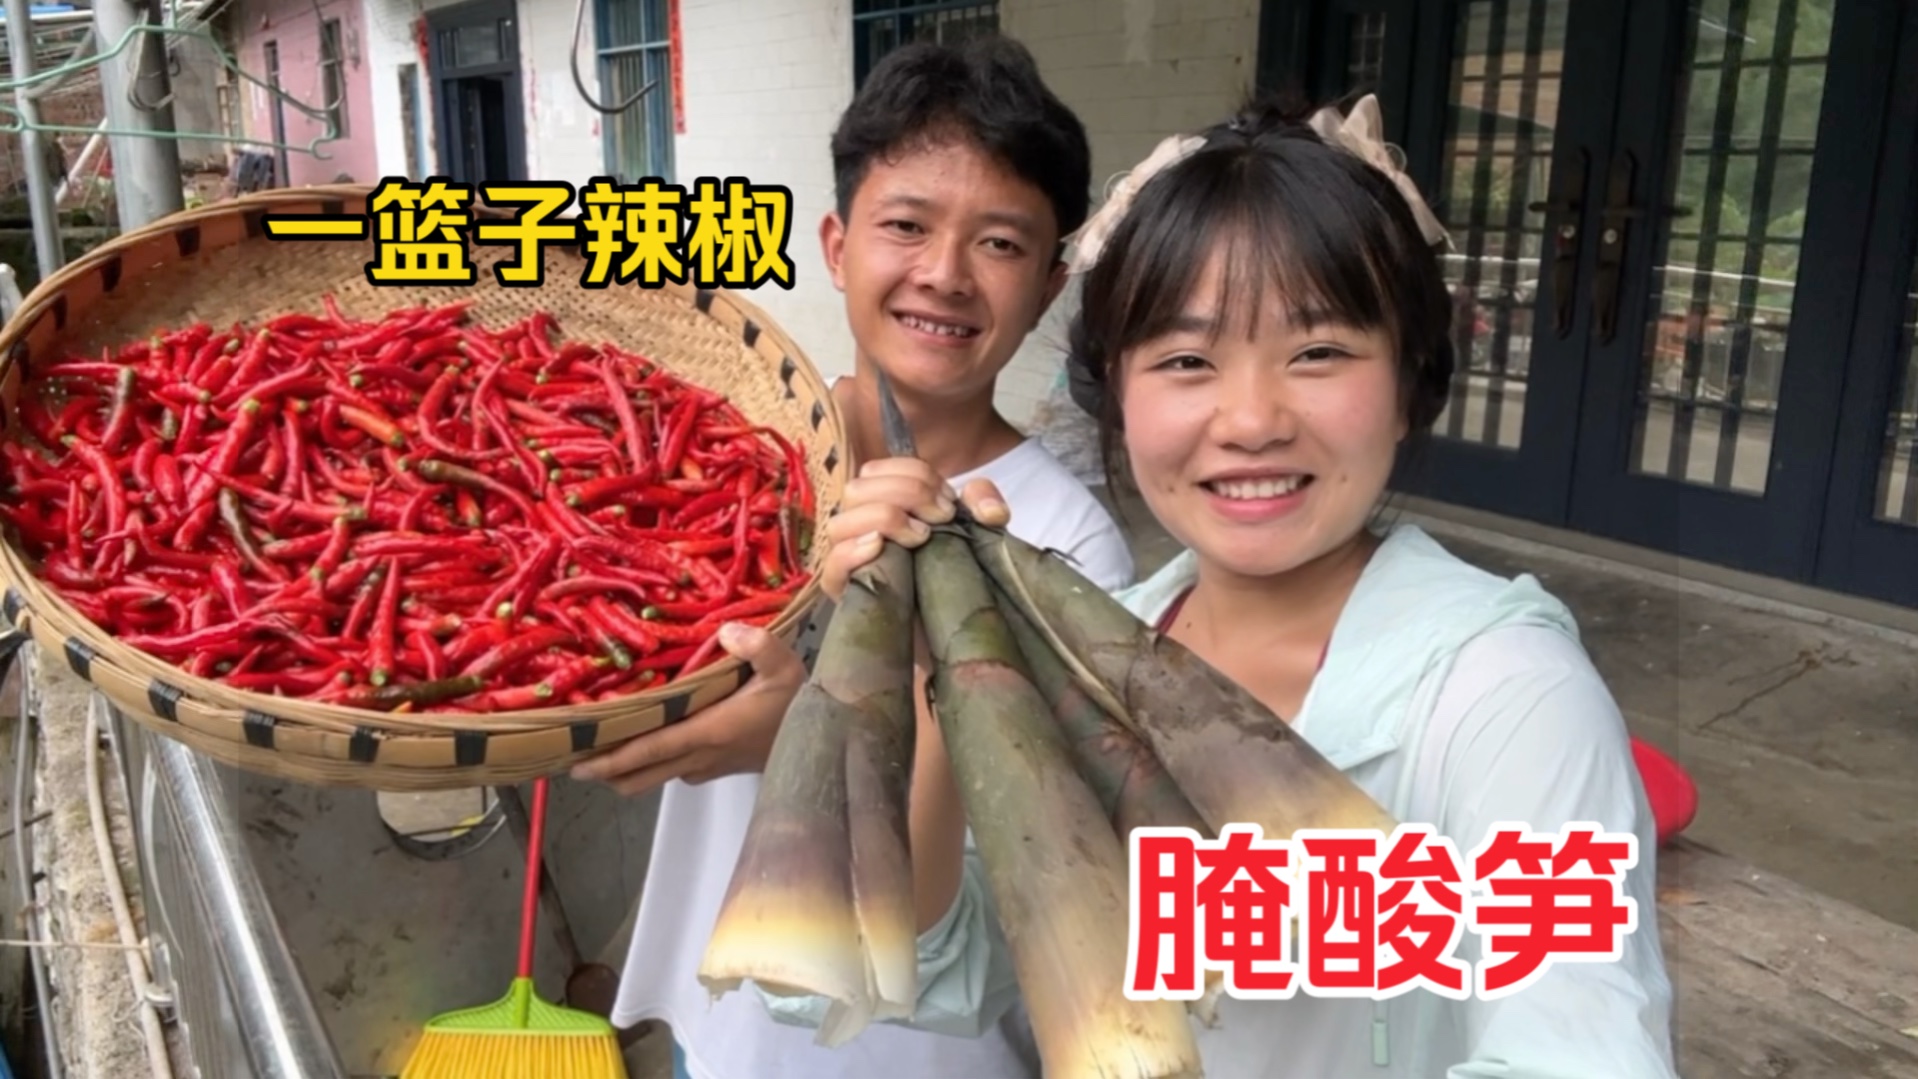 在农村就是好，和老公摘一篮子辣椒腌酸笋，真的是爆辣又开胃